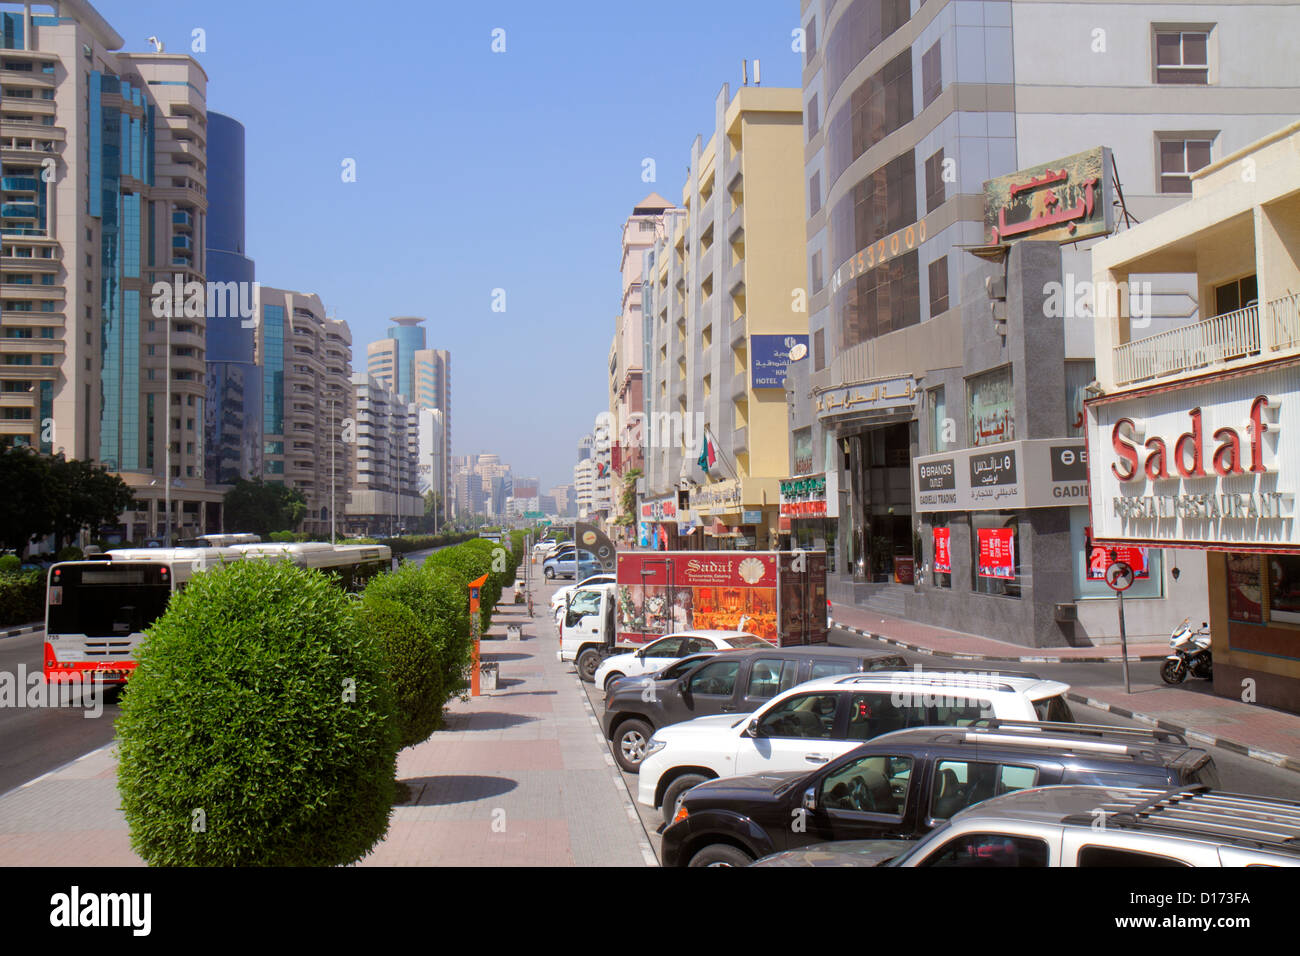 Dubai VAE, Vereinigte Arabische Emirate, Deira, Al Rigga, Al Maktoum Road, Straßenszene, Unternehmen, Bezirk, Gebäude, Skyline der Stadt, Englisch, Arabisch, Sprache, Bilingua Stockfoto